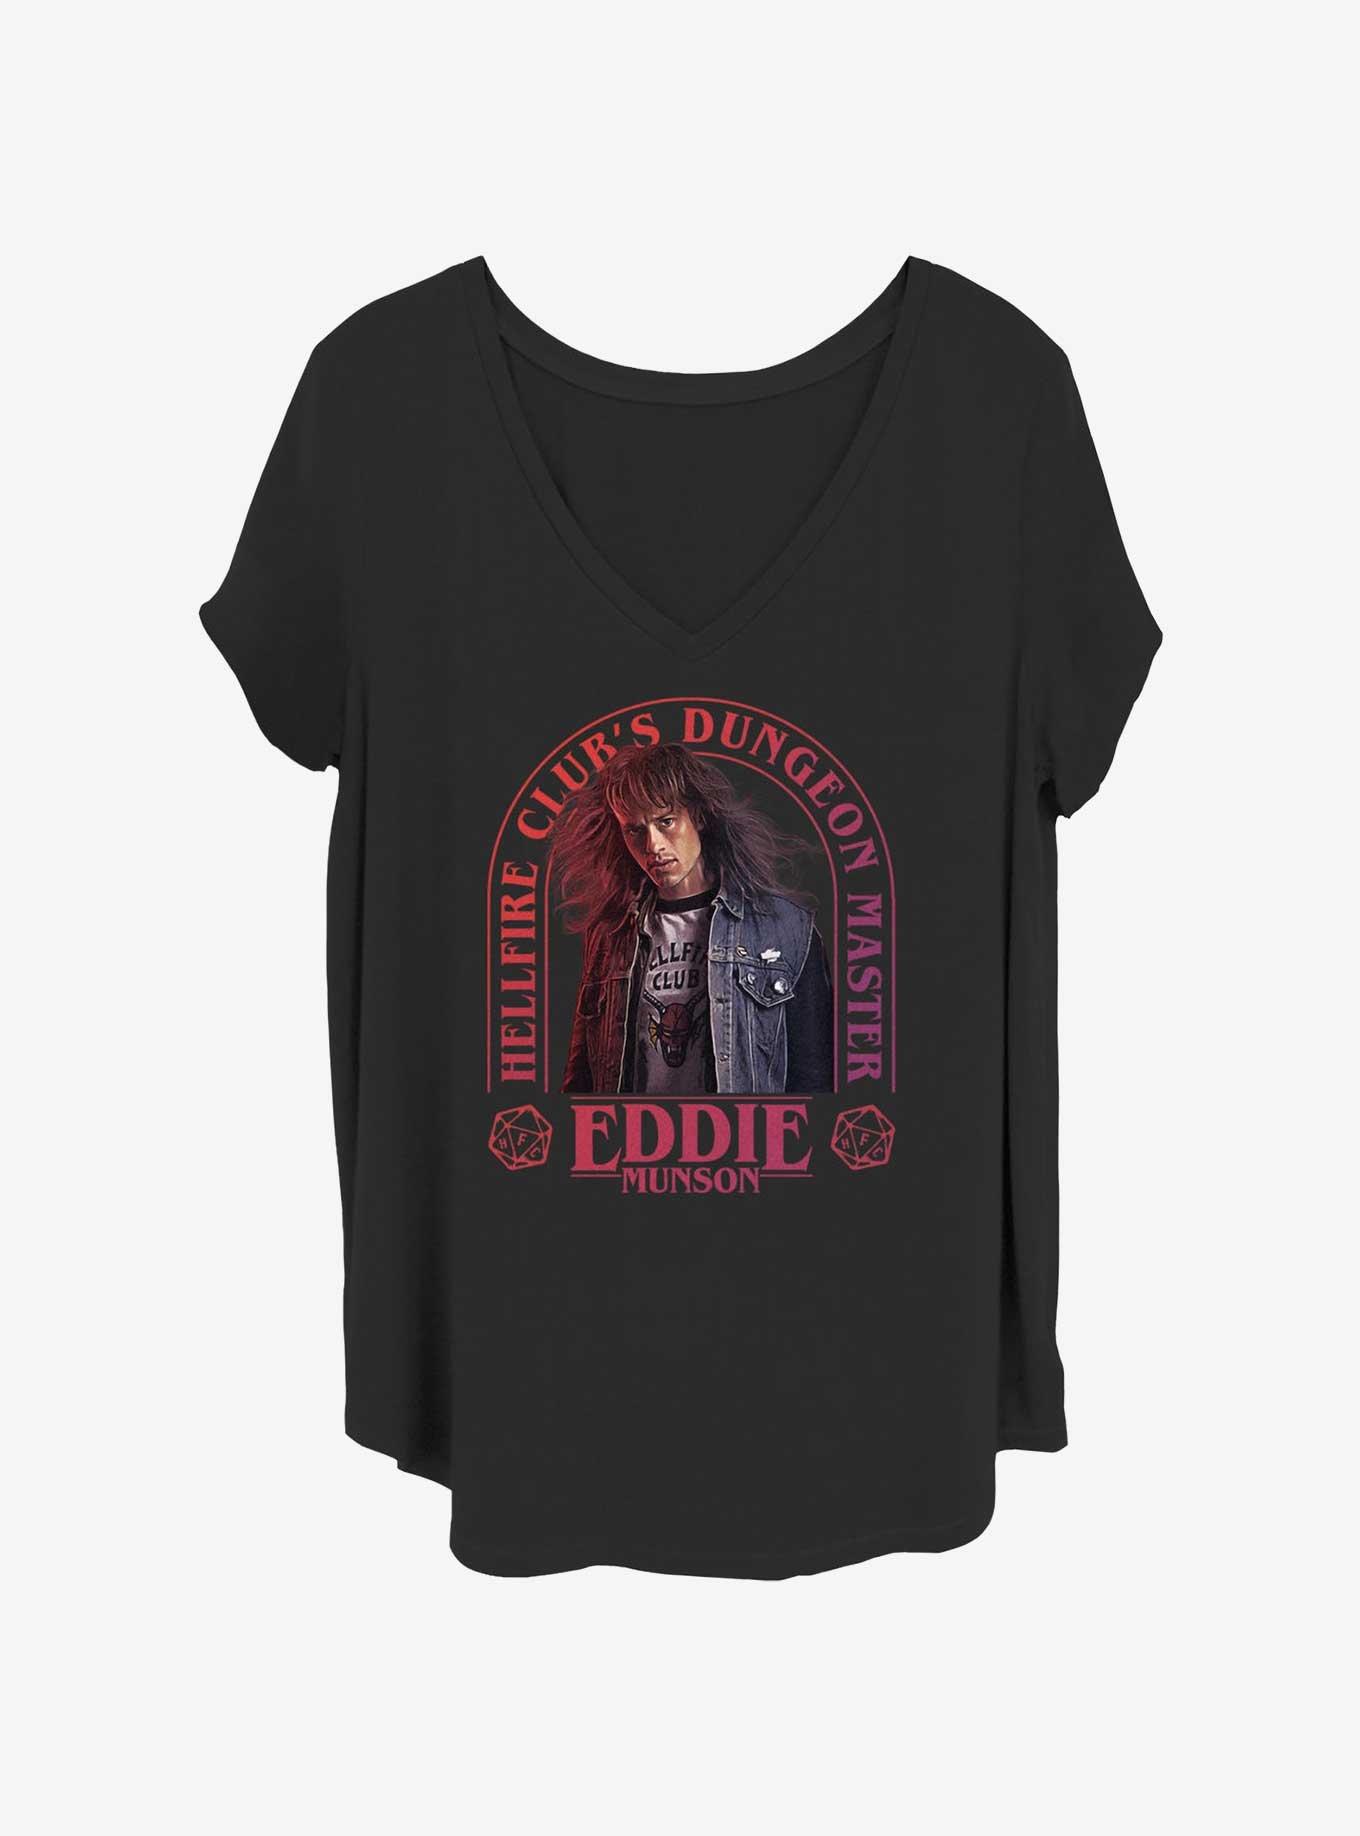 Stranger Things Dungeon Master Eddie Munson Girls T-Shirt Plus Size, BLACK, hi-res